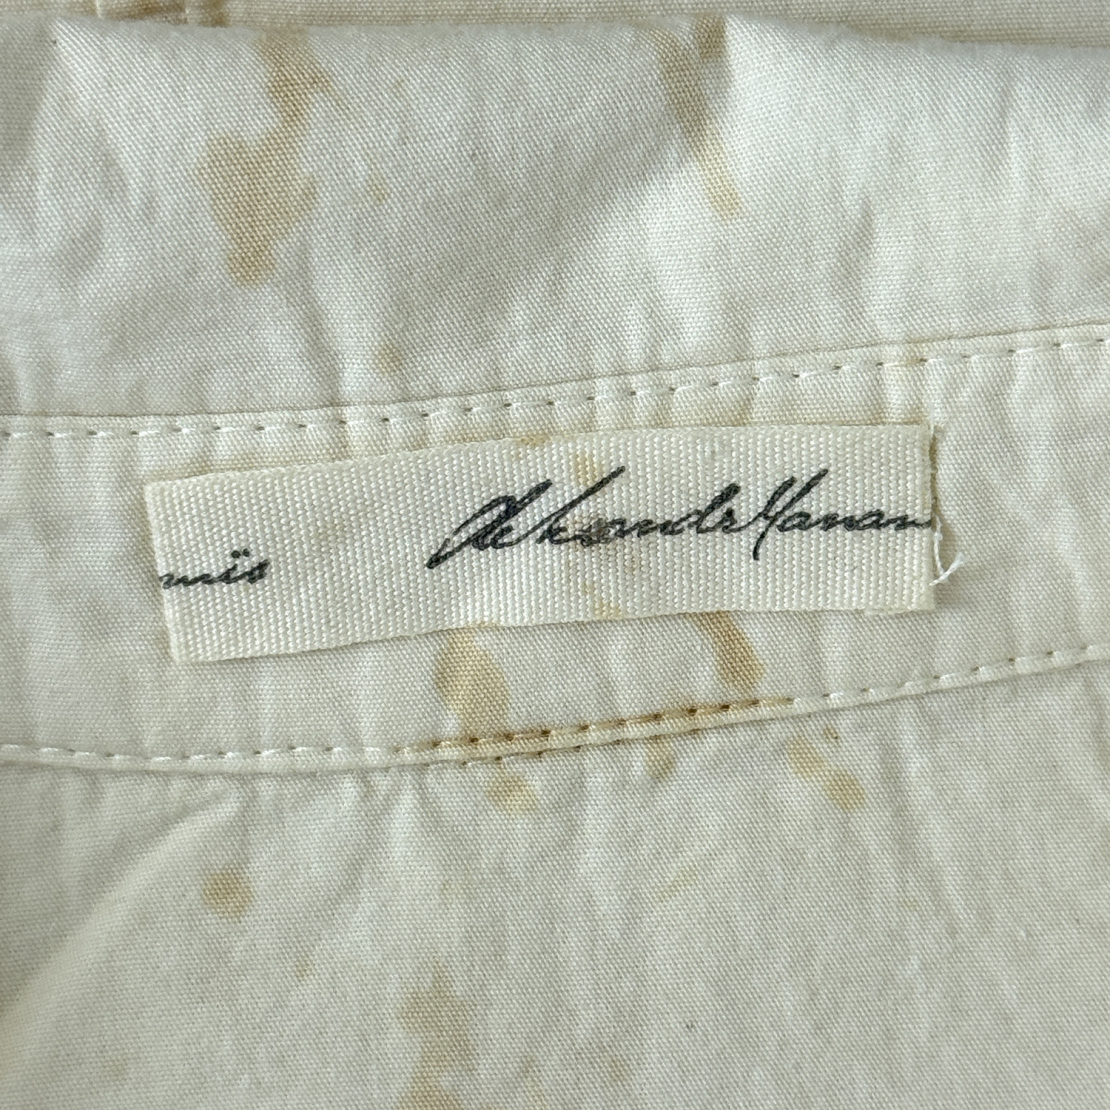 Дамска риза с петна от чай Aleksandr Manamis shirt with tea stains